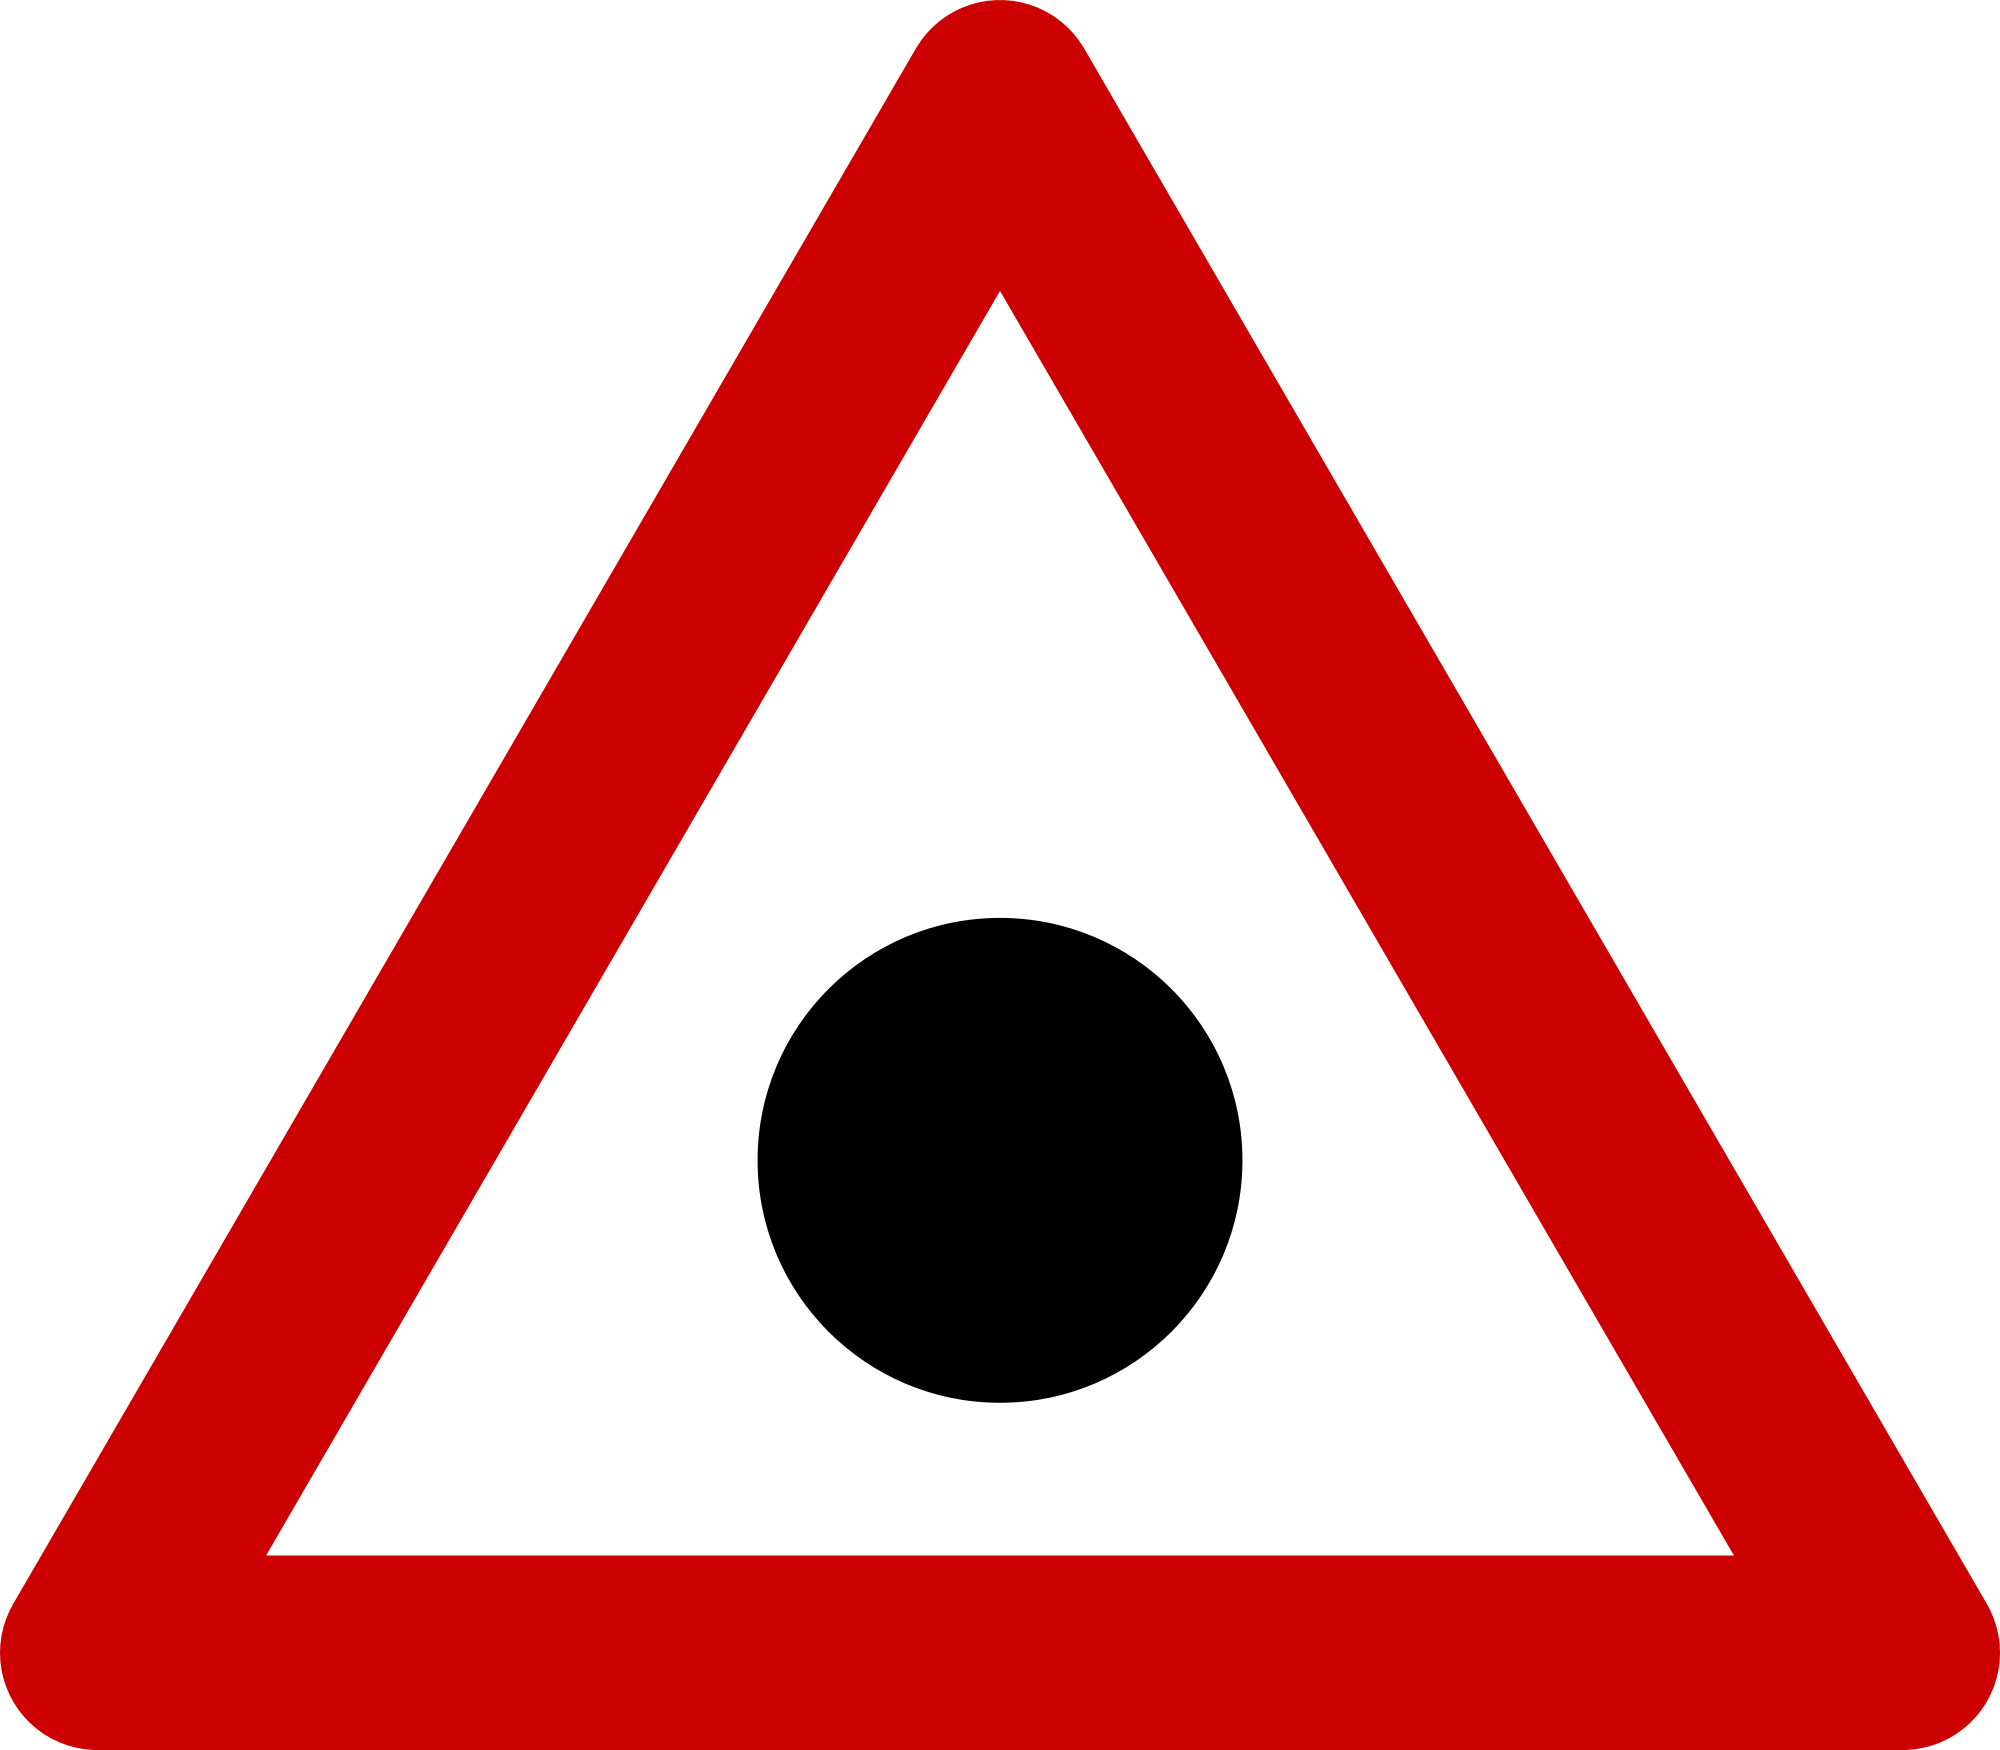 Open - No Through Road Sign (2000x1750)